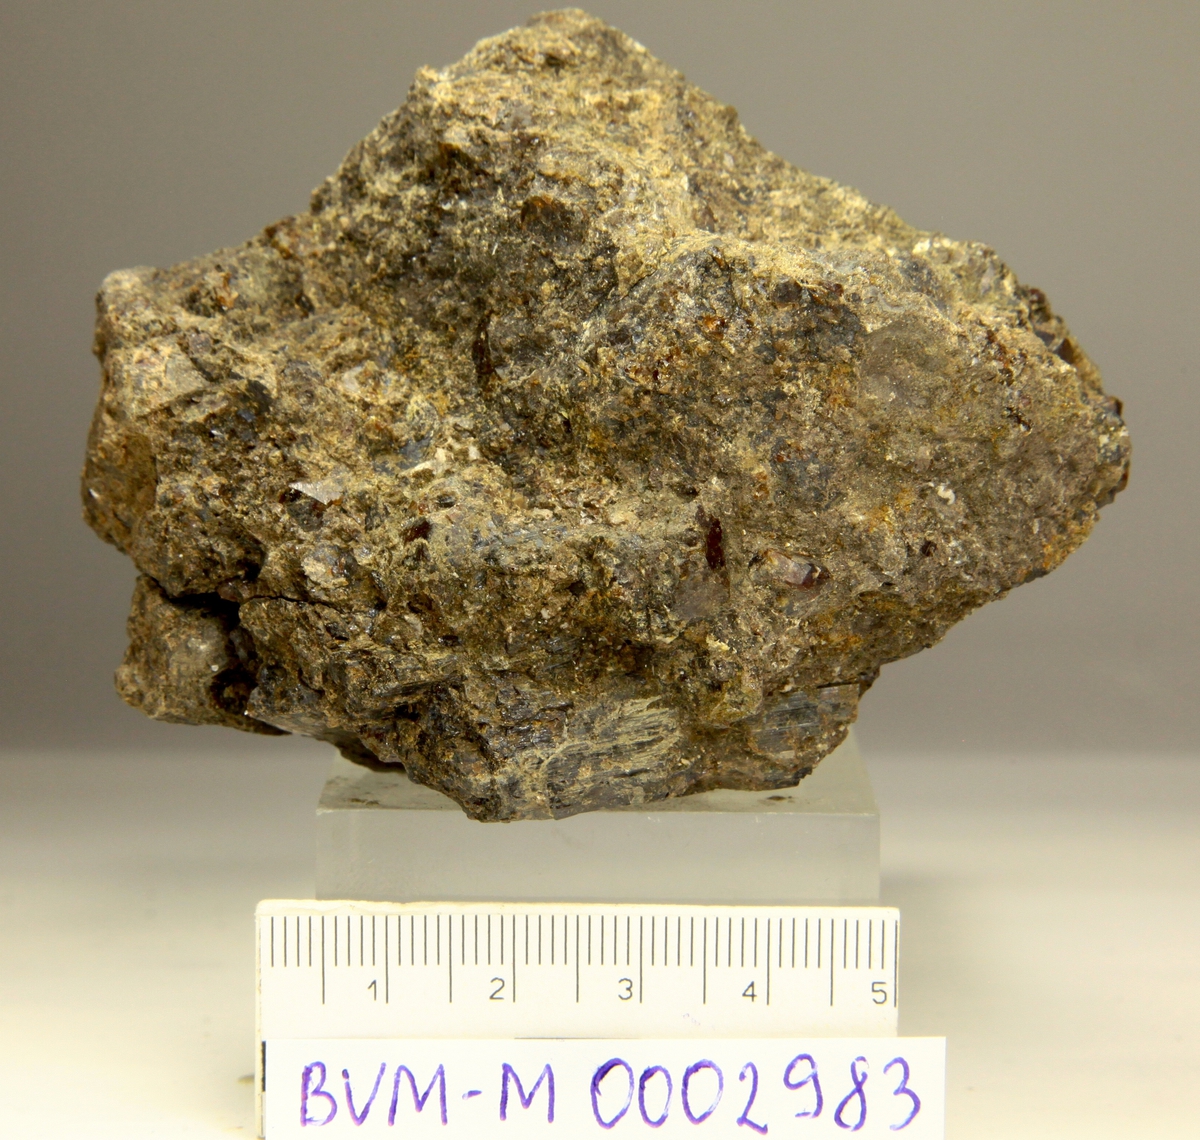 Svartbrune krystaller, uten toppflater.
Årvoll (lokalitet for gul mangan-axinitt).